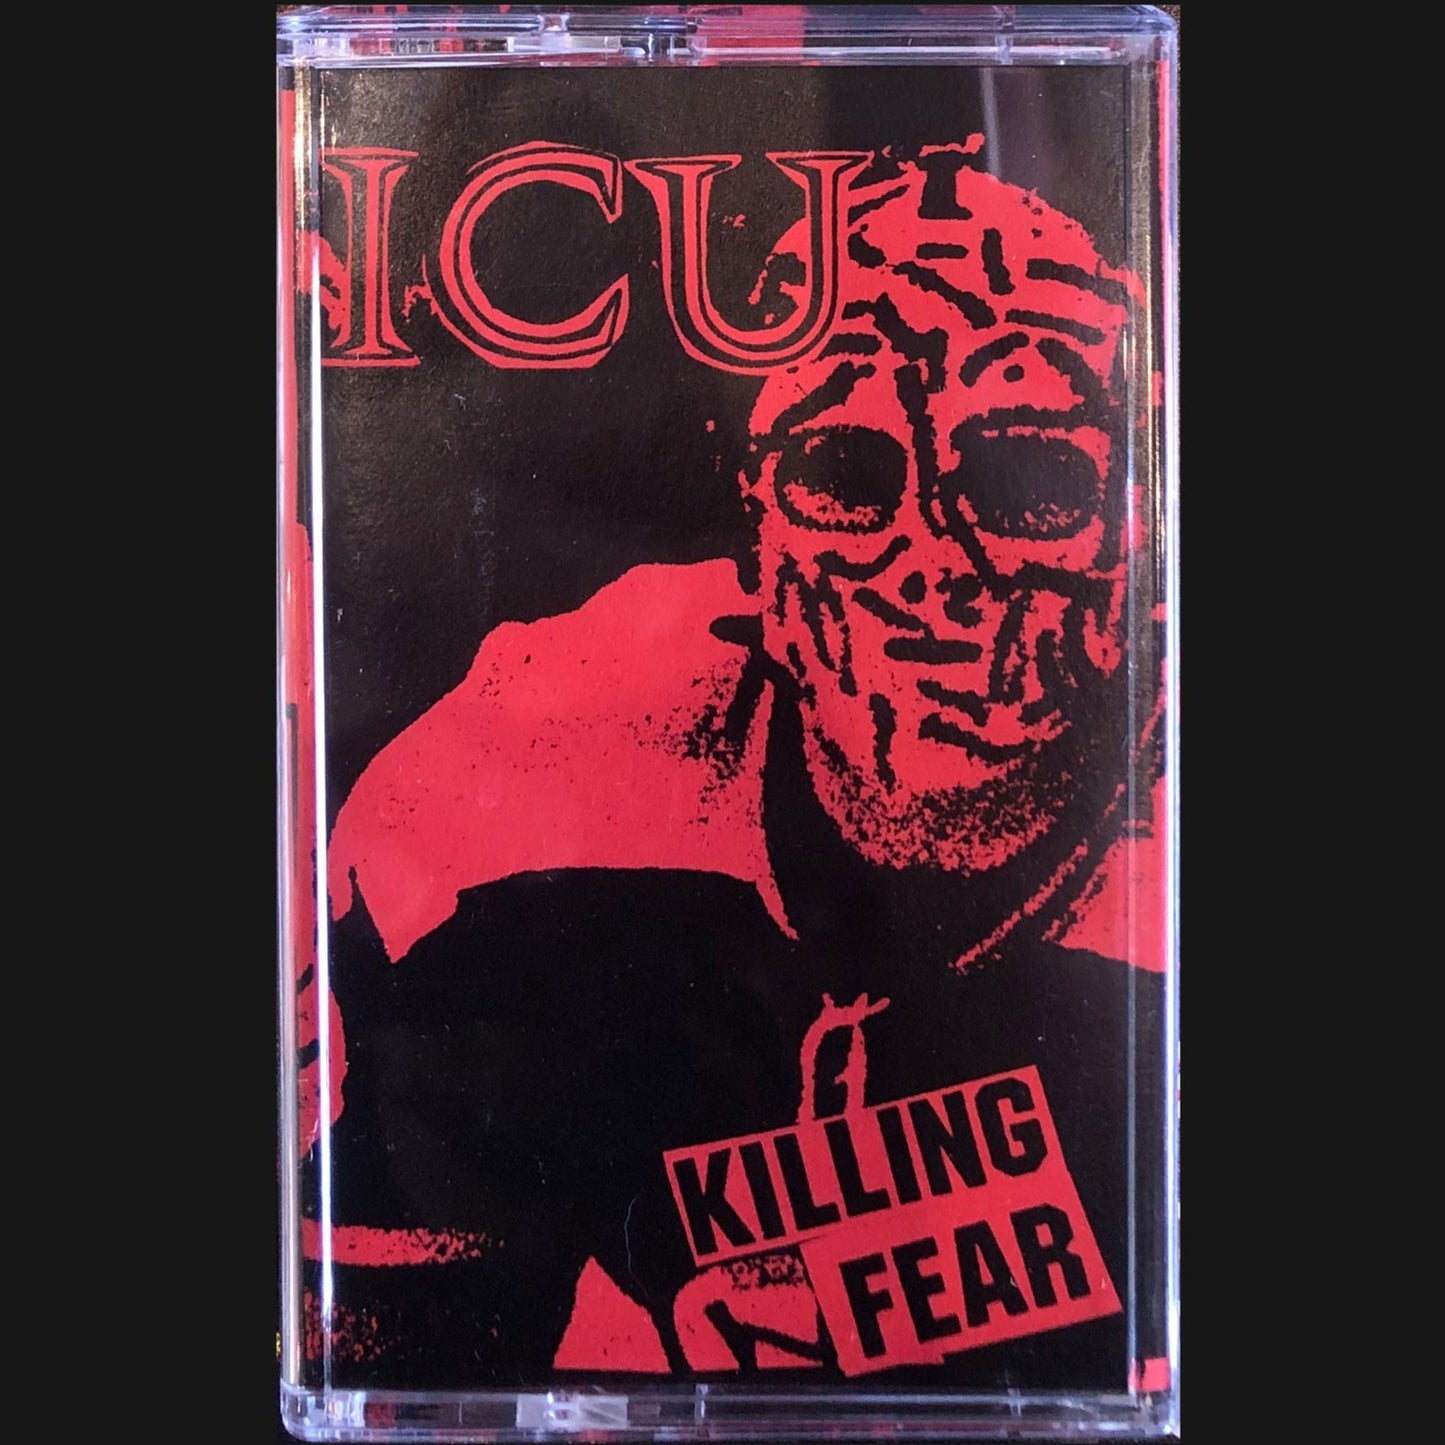 ICU - "KILLING FEAR" CS